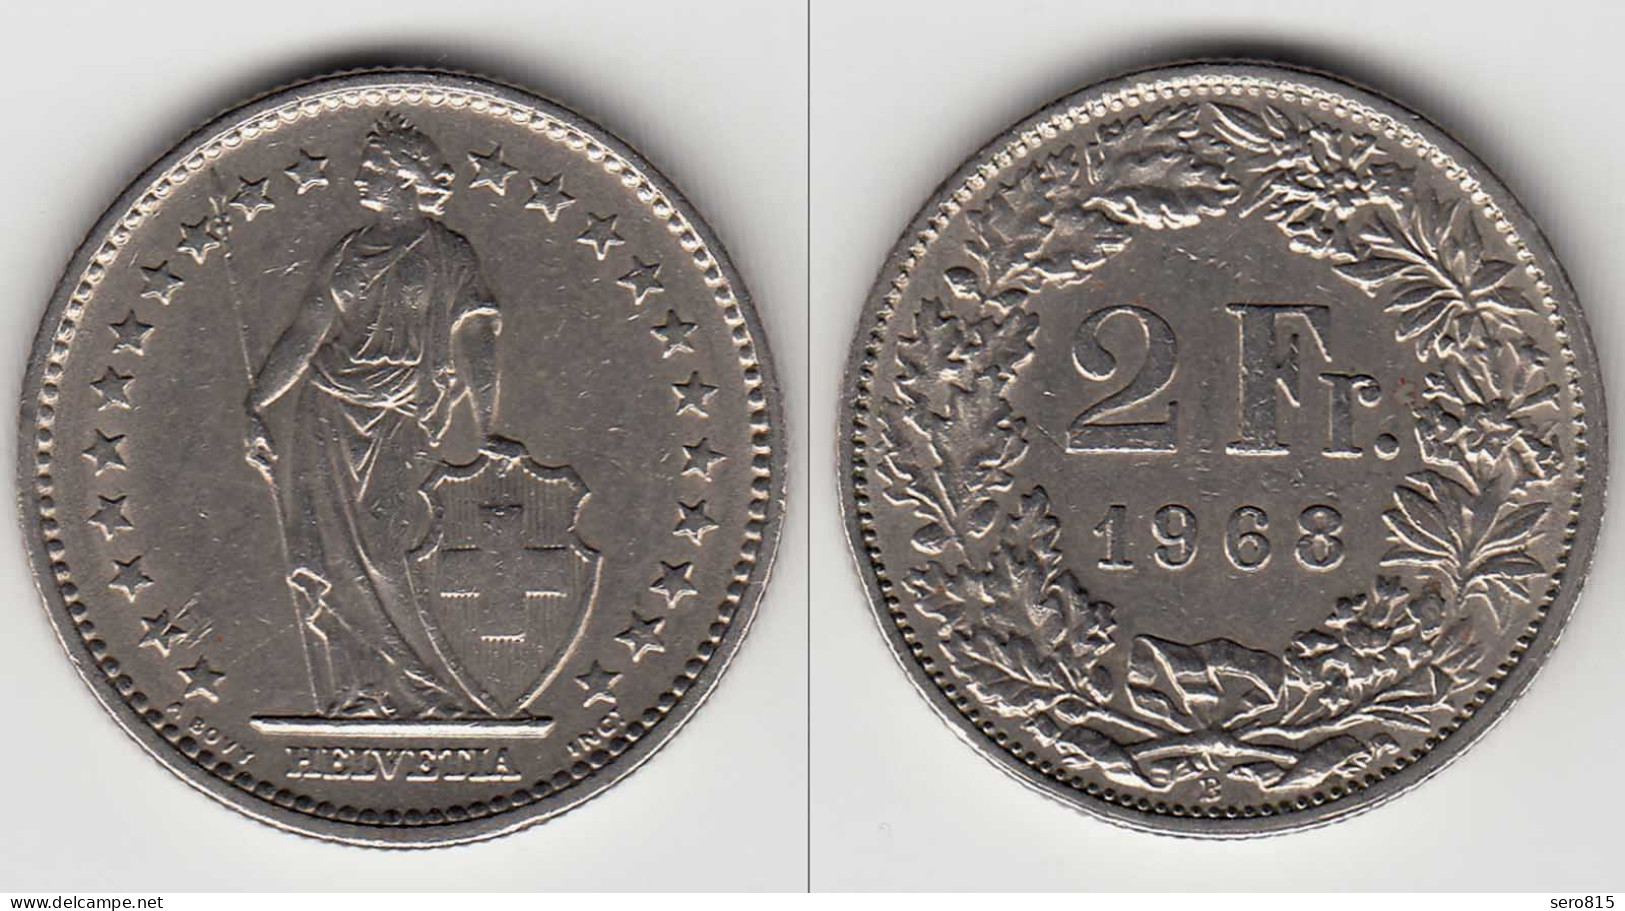 Schweiz - Switzerland 2 Franken Cu-Ni Münze 1968   (29995 - Other & Unclassified